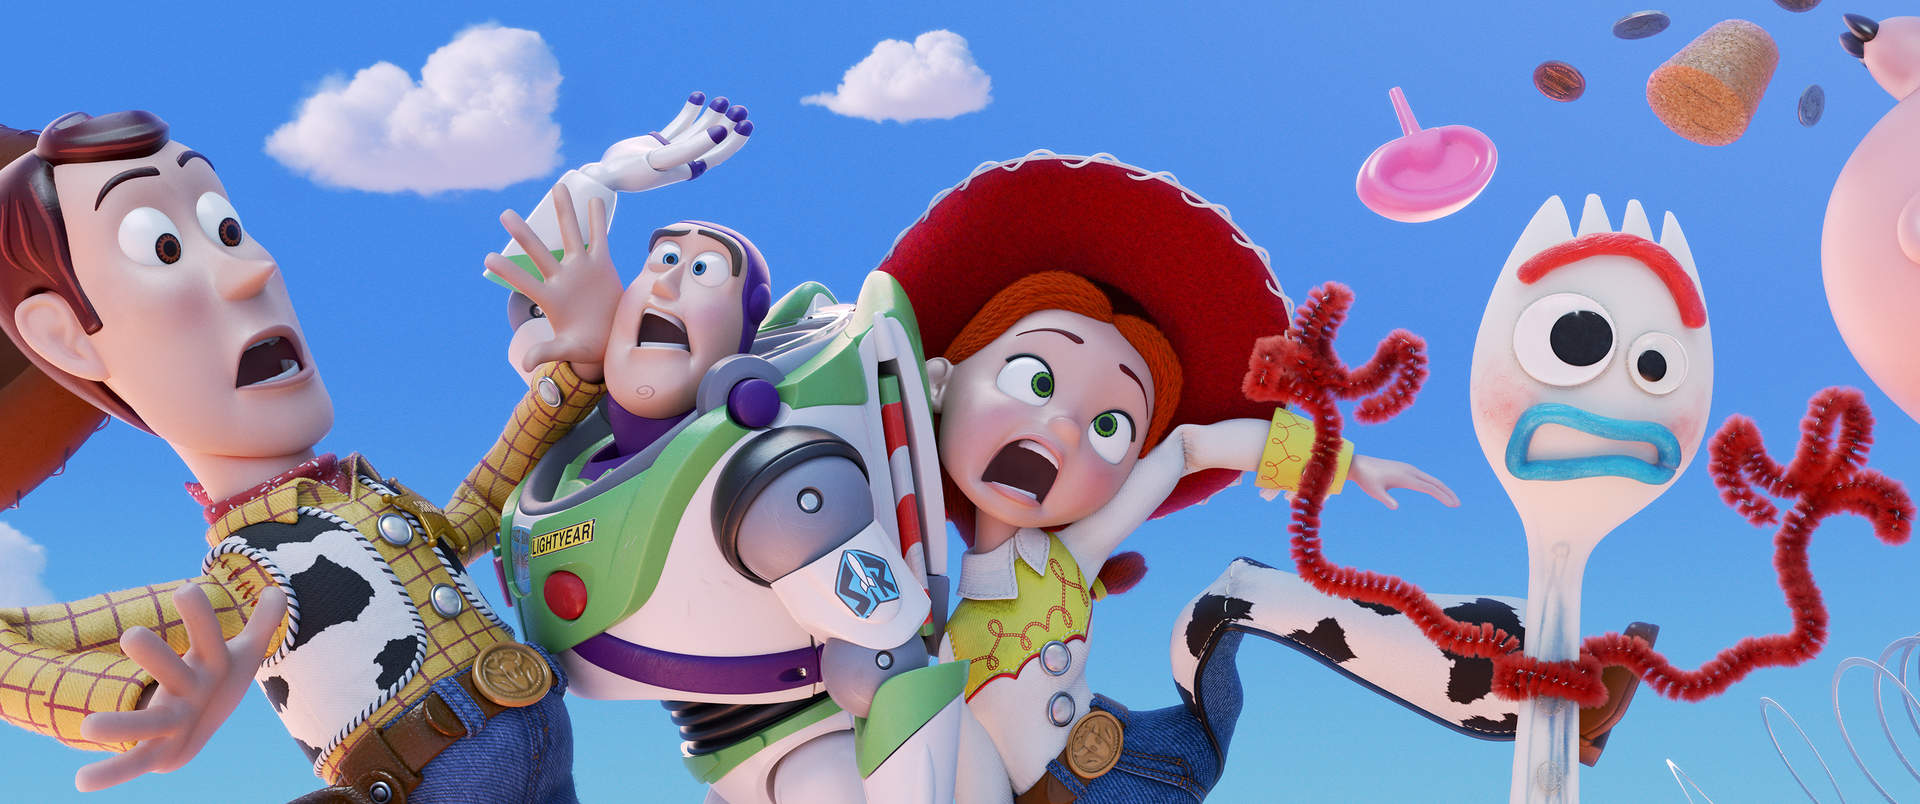 Toy Story: Alles hört auf kein Kommando - Szenenbild 2 von 5